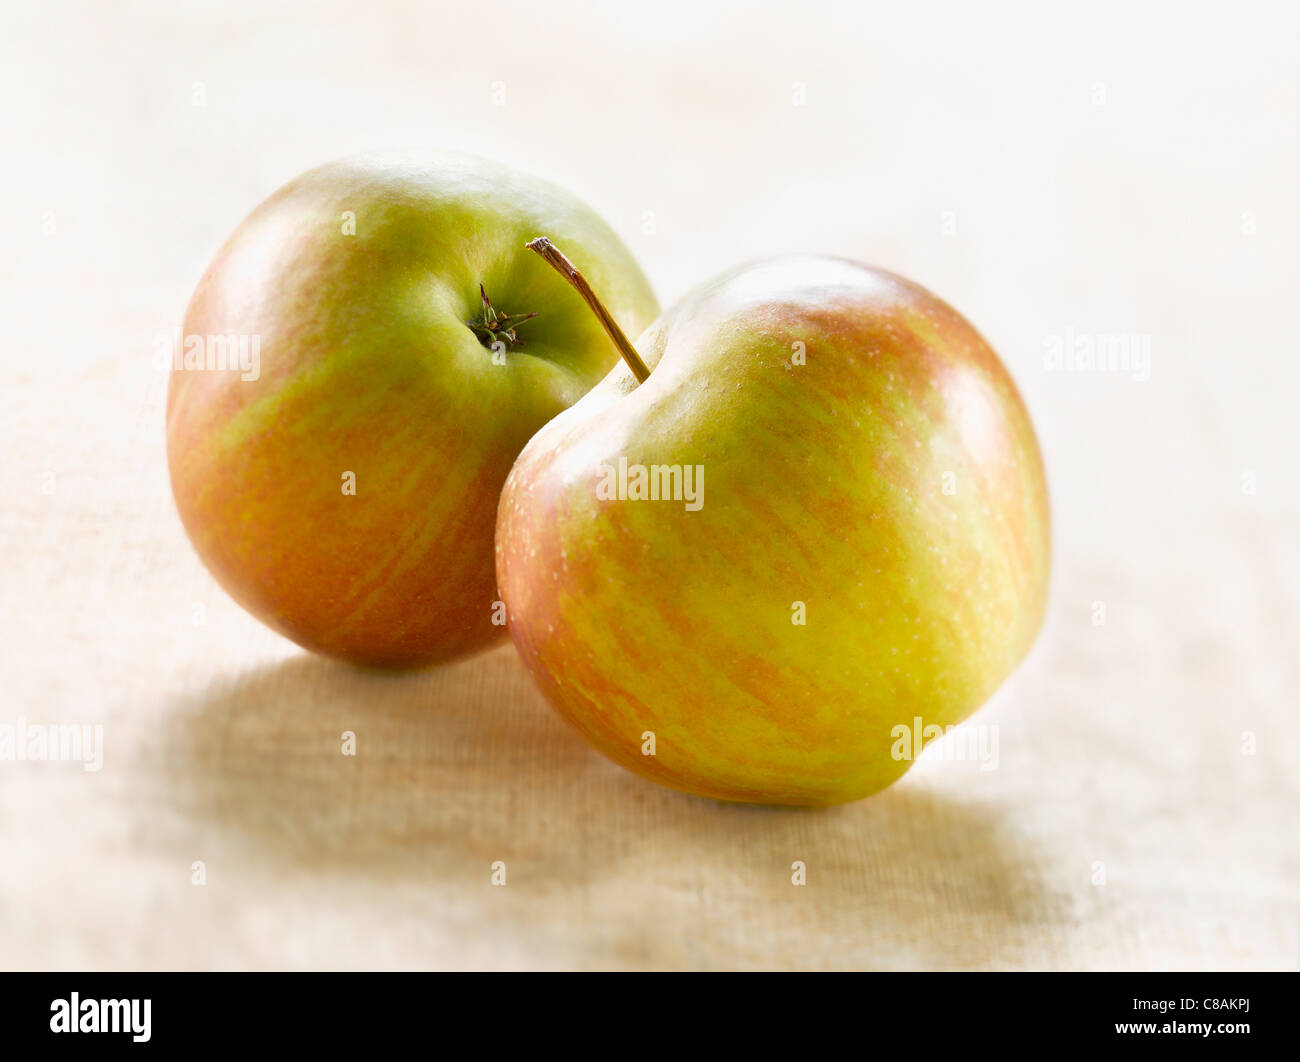 Rubinette apples Stock Photo